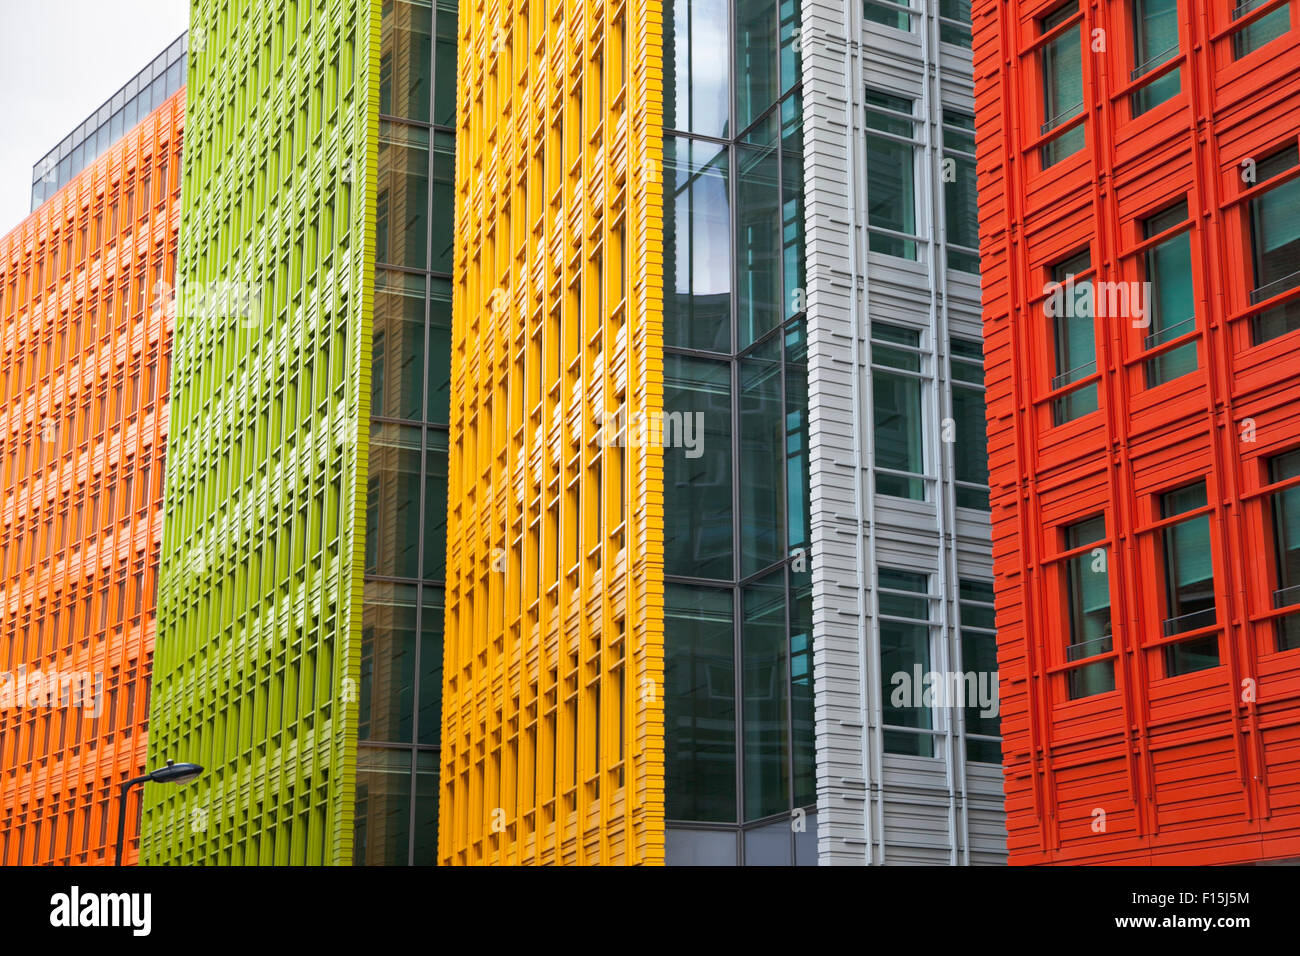 Les façades modernes colorés (Central Saint Giles, London, UK) Banque D'Images